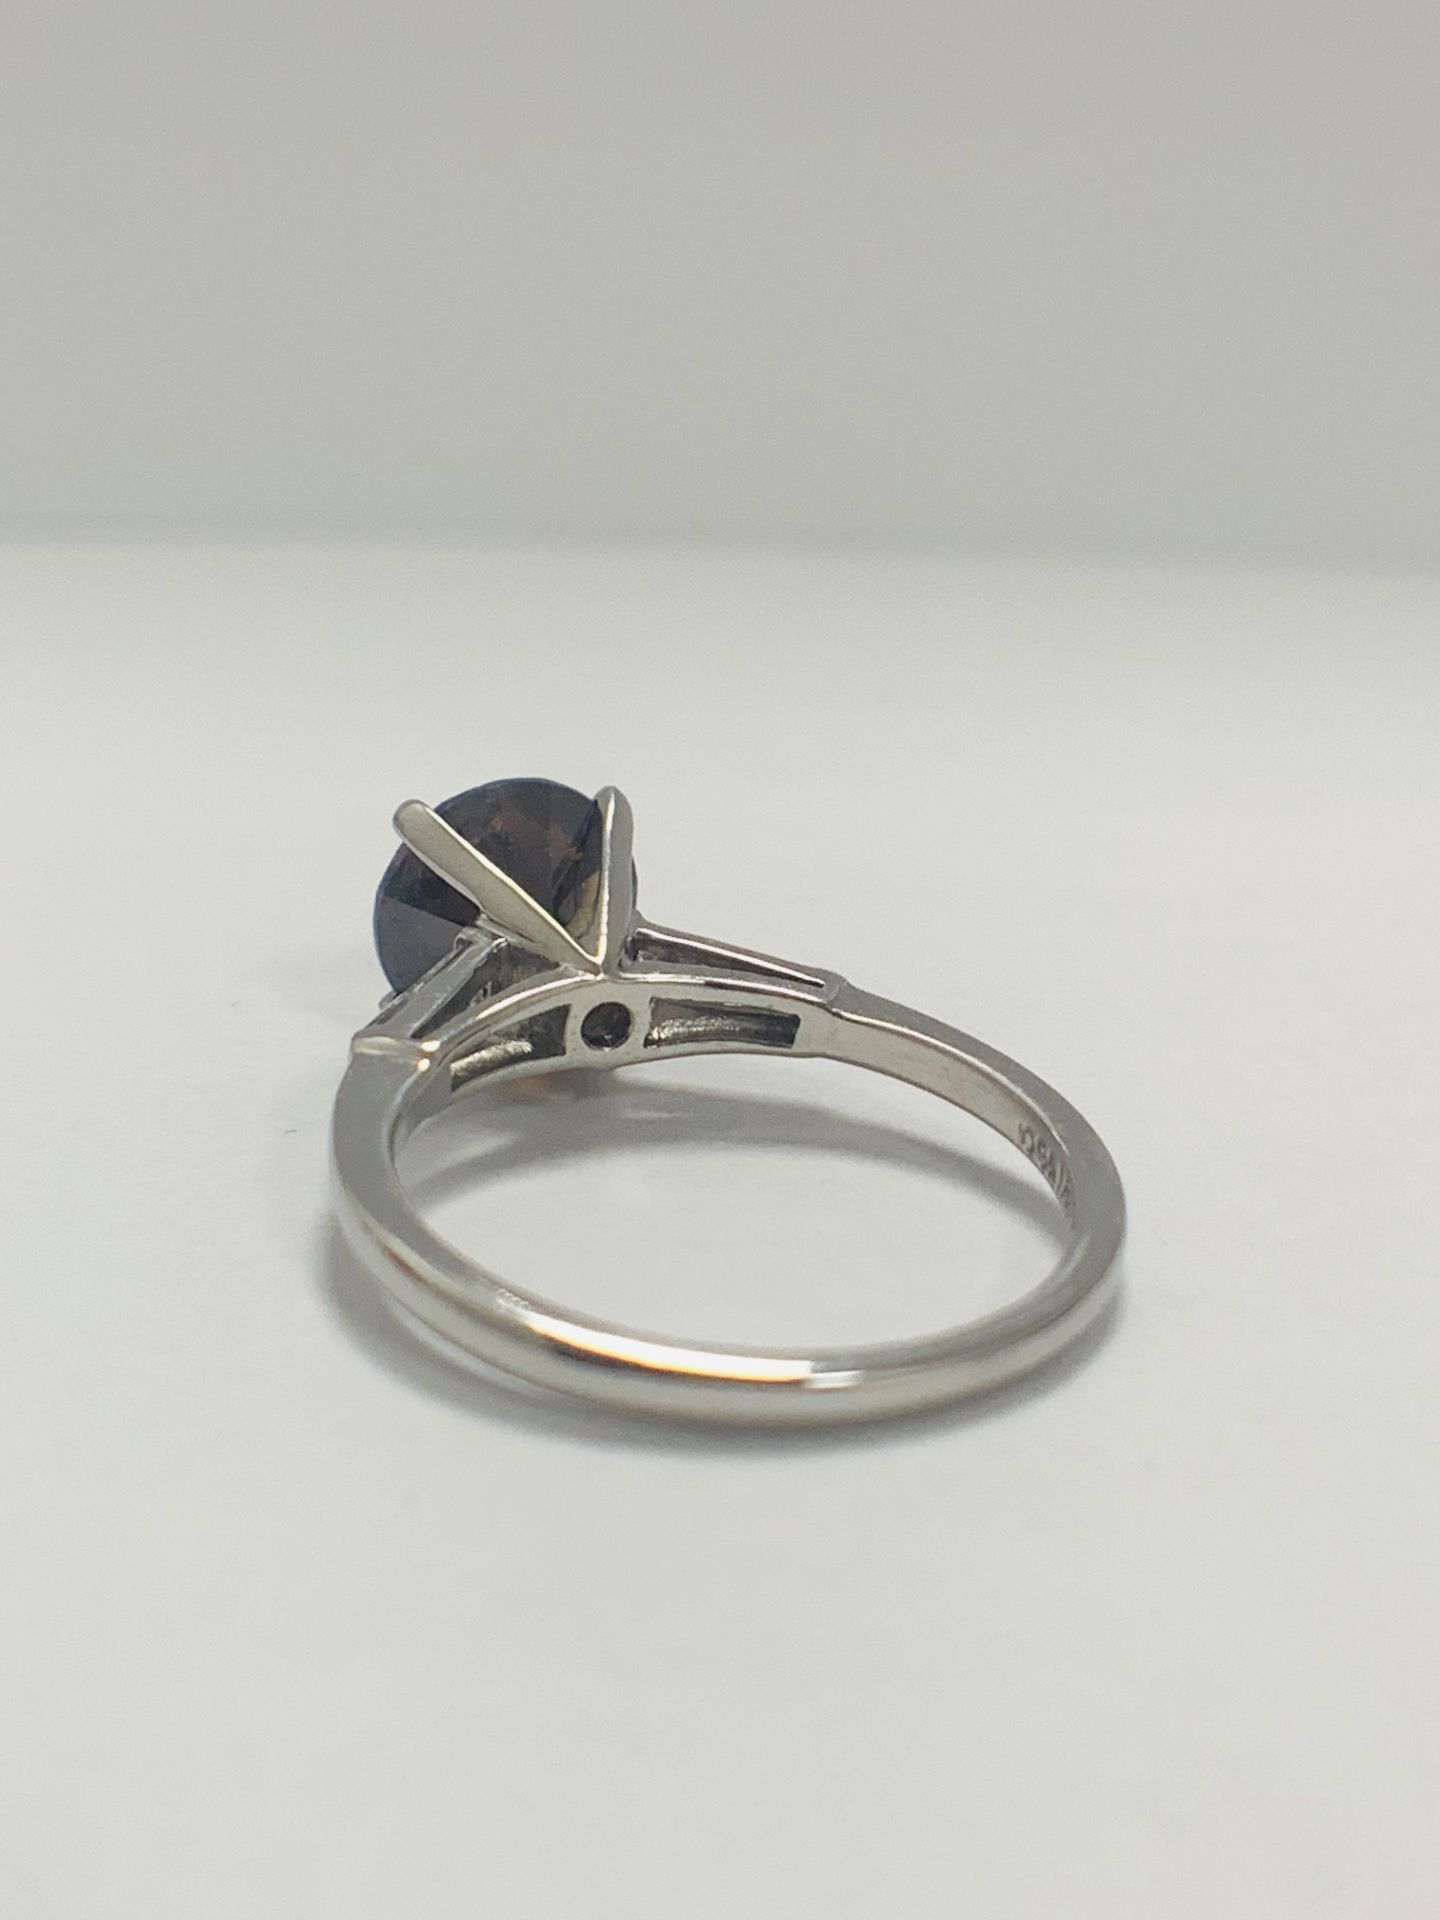 Platinum Diamond Ring Featuring Centre, Round Brilliant Cut, Deep Orangey Brown Diamond (2.15ct) - Image 7 of 14